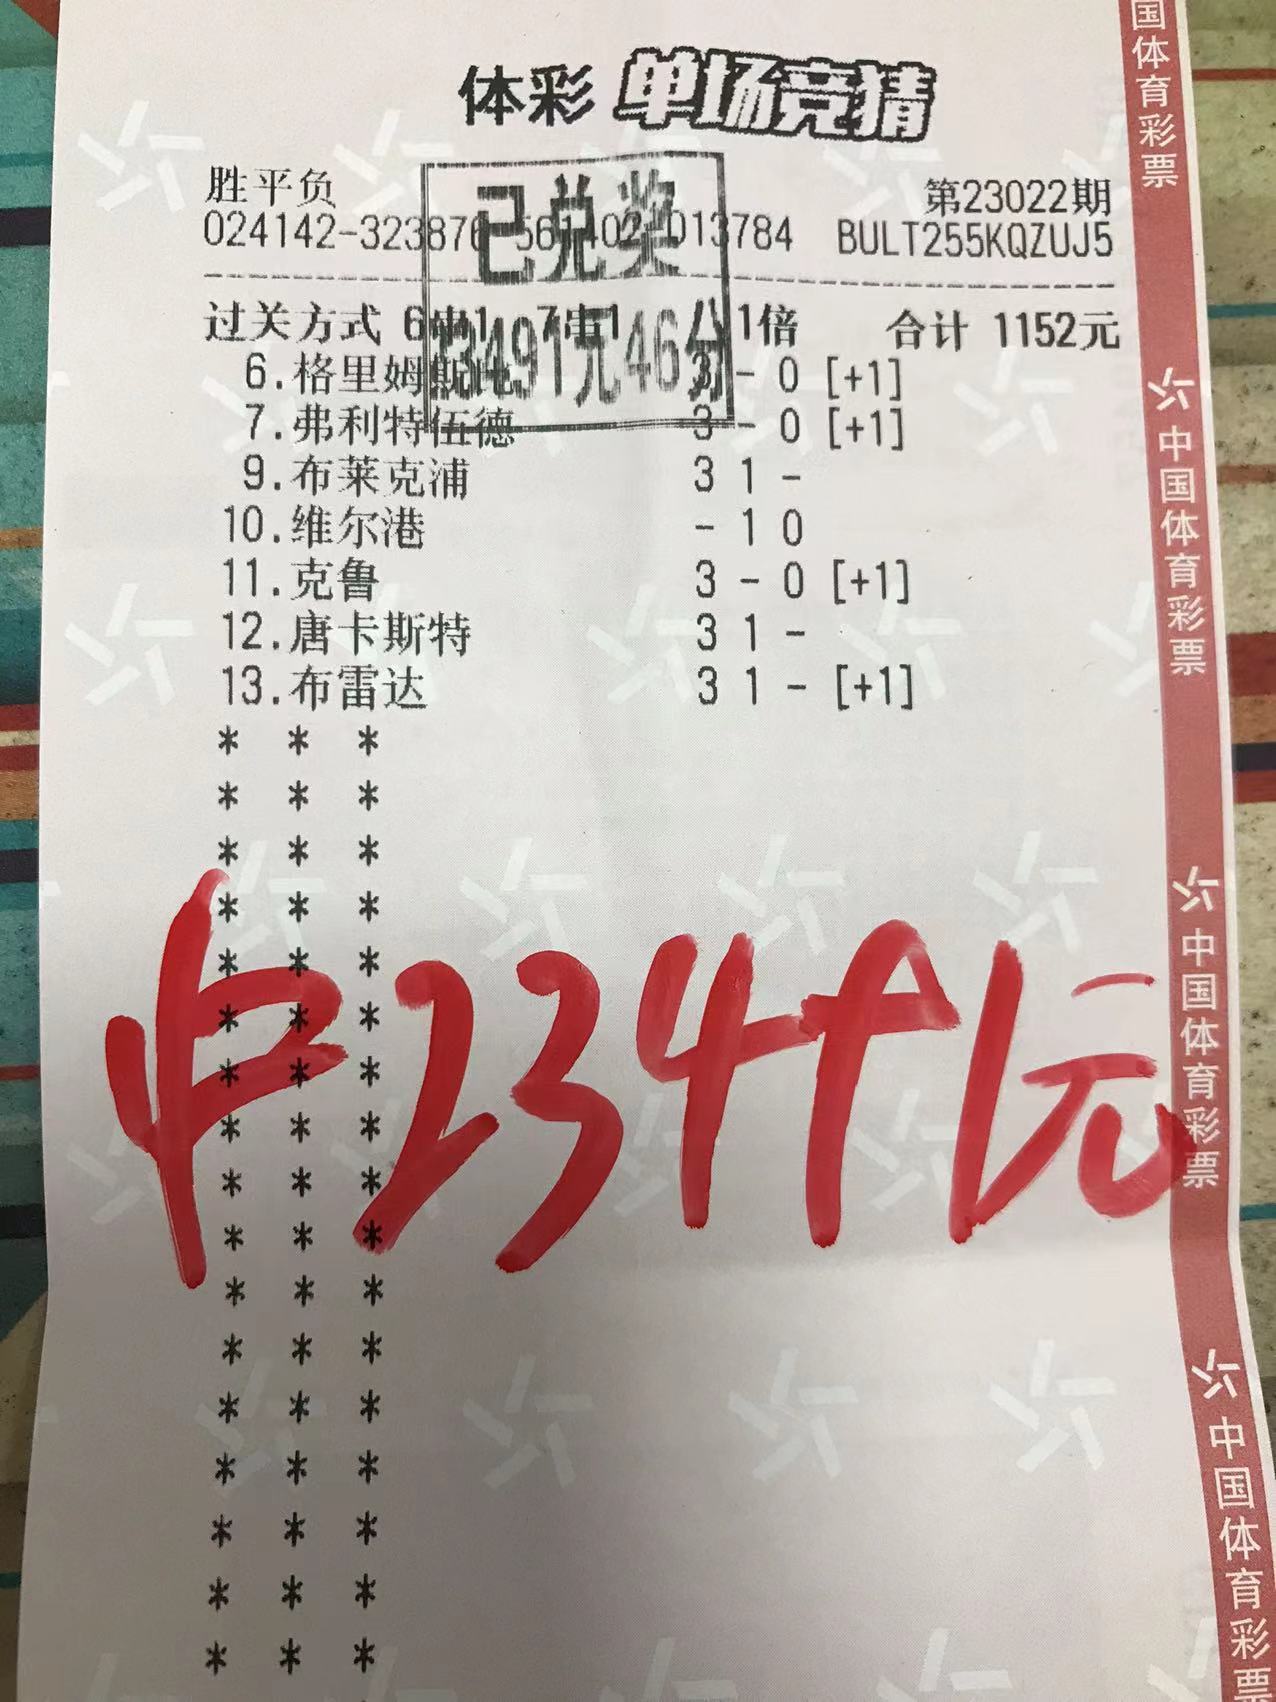 2月8日.6串7收米23491元-北单实体店